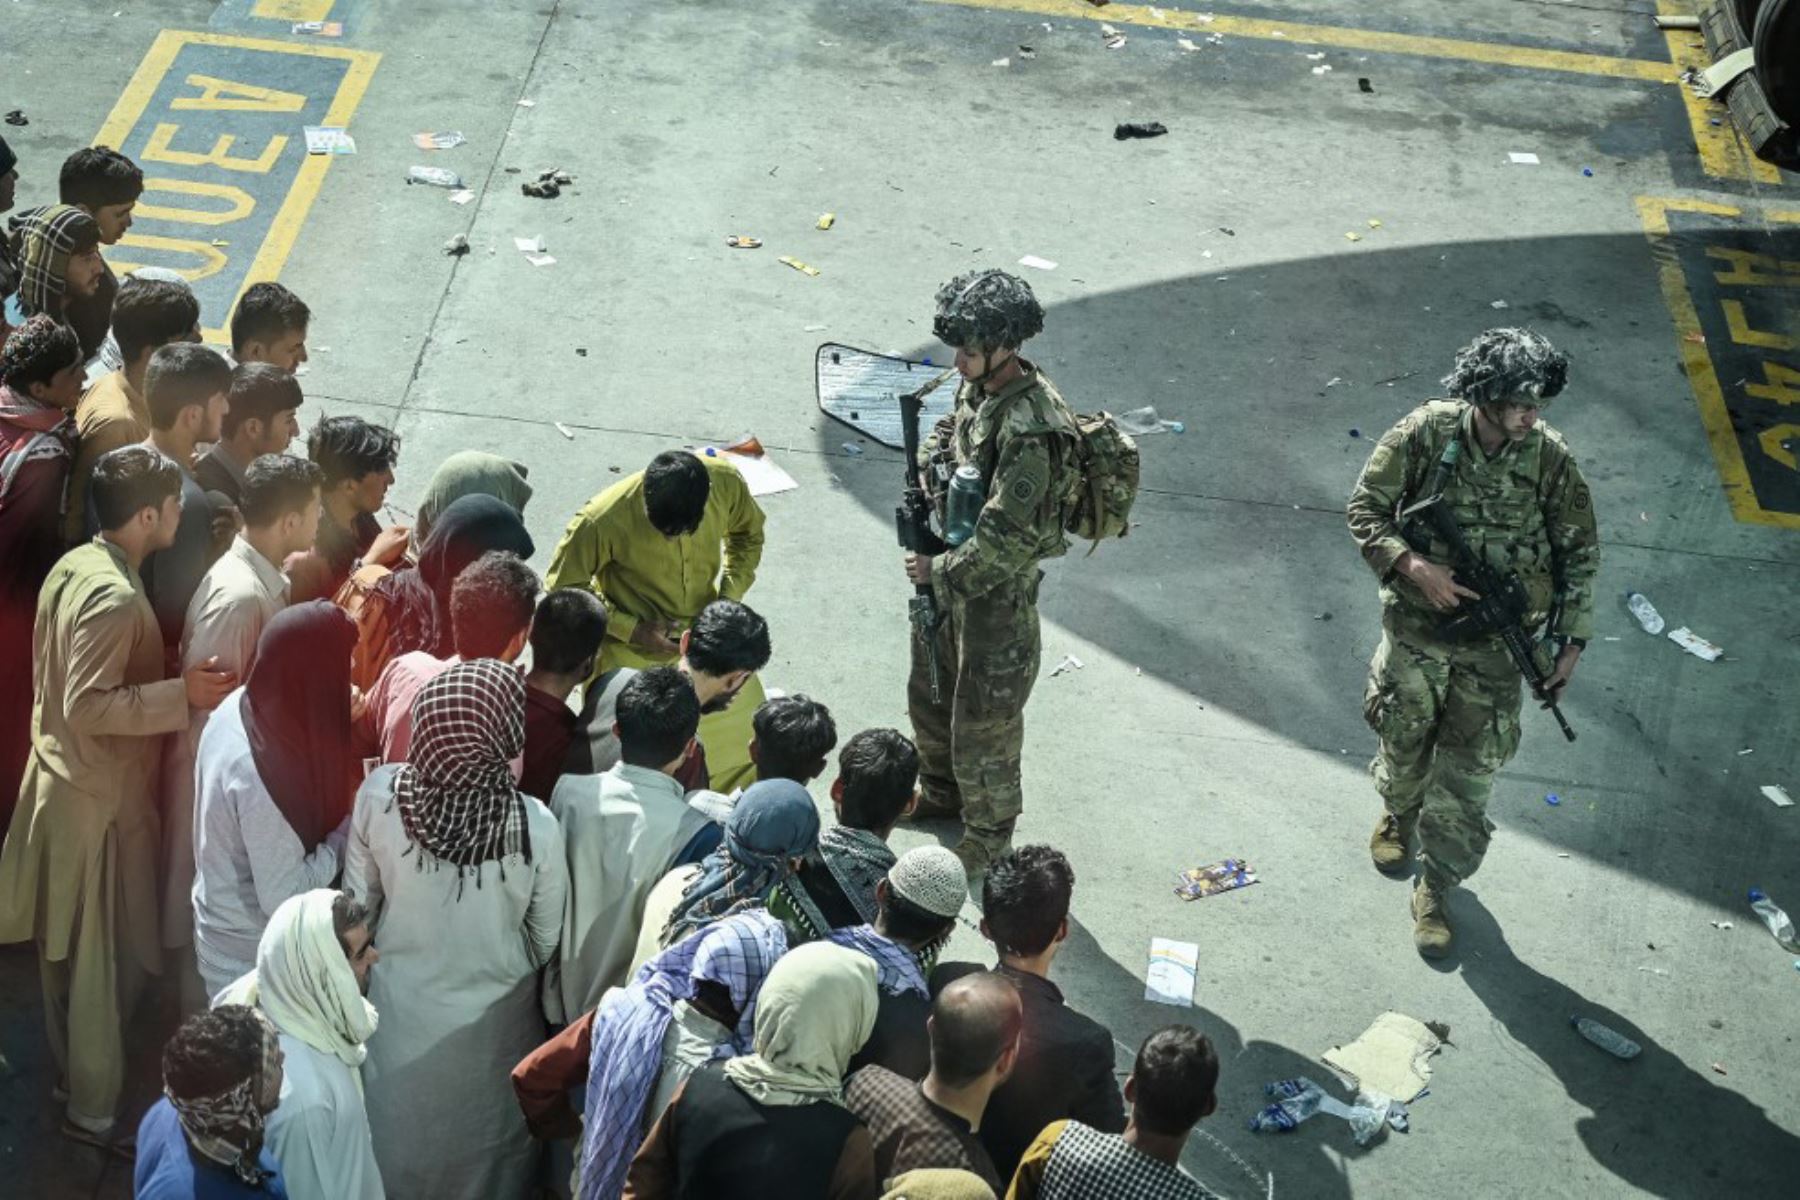 Soldados estadounidenses montan guardia mientras los afganos esperan en el aeropuerto de Kabul, después del final de la guerra de 20 años de Afganistán, mientras miles de personas asaltaban el aeropuerto de la ciudad tratando de huir de la temida línea dura de islamistas del grupo.

Foto: AFP